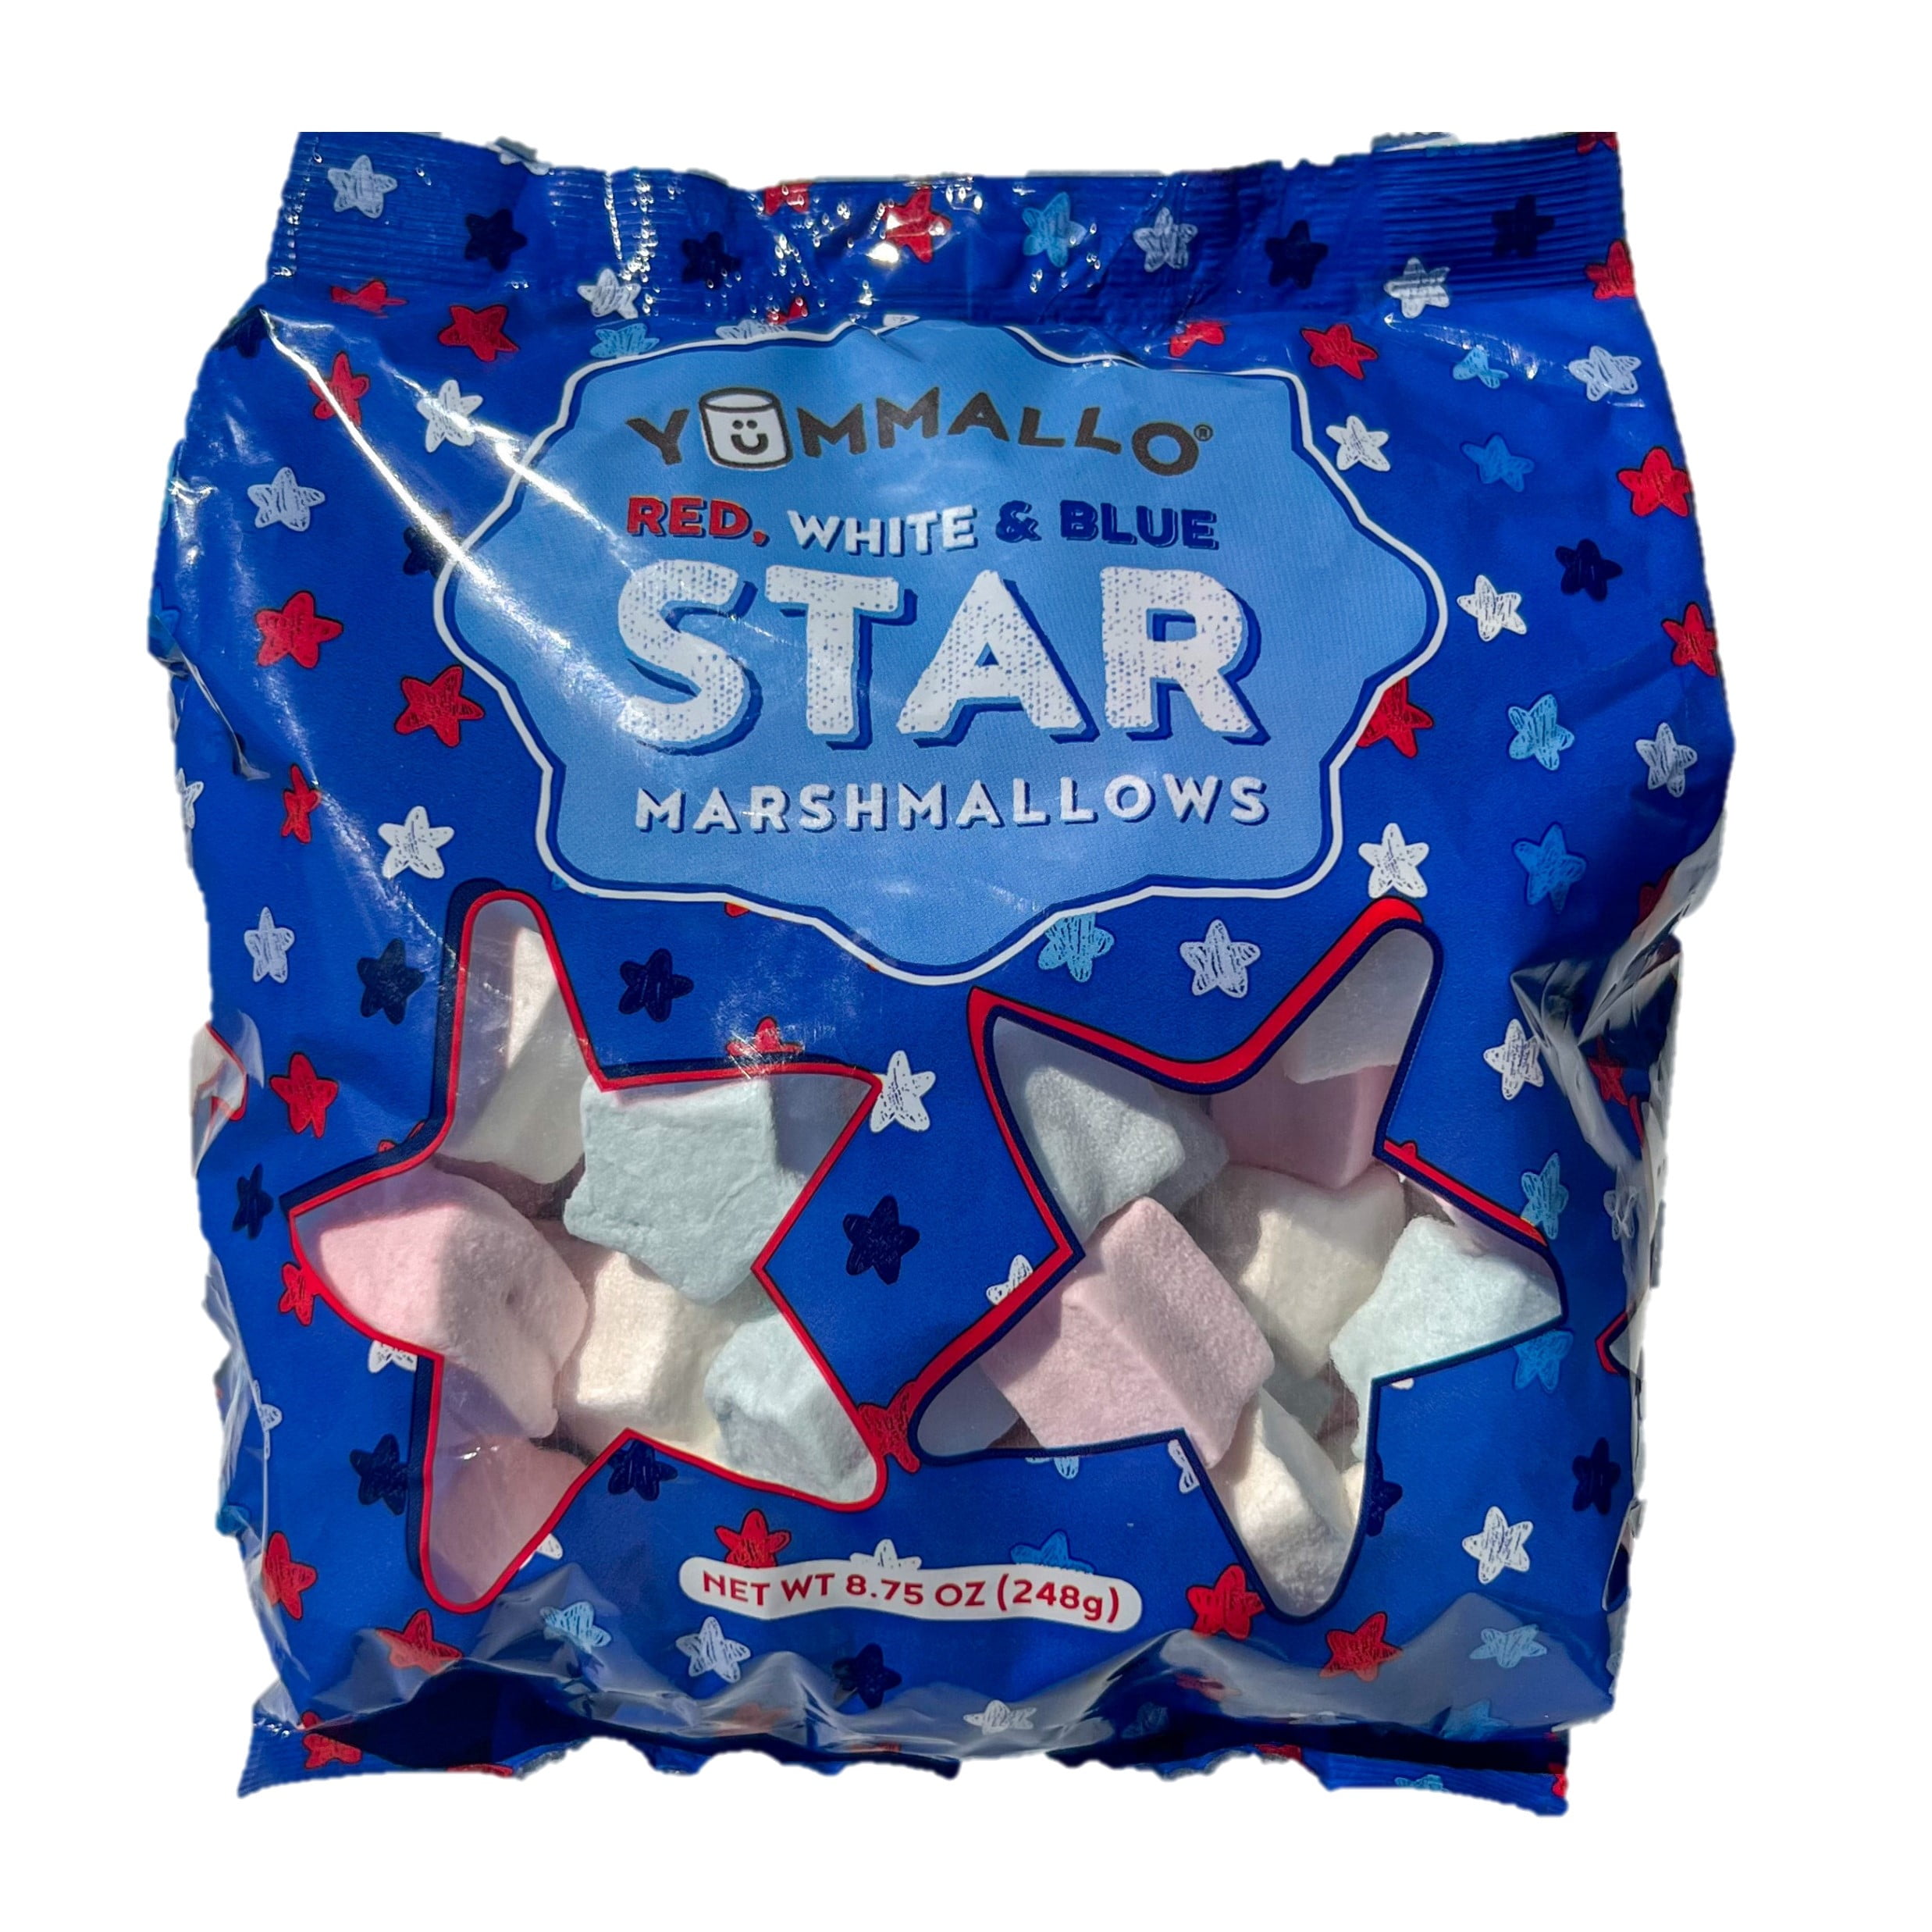 Yummallo Red White Blue Star Marshmallows, 8.75 oz